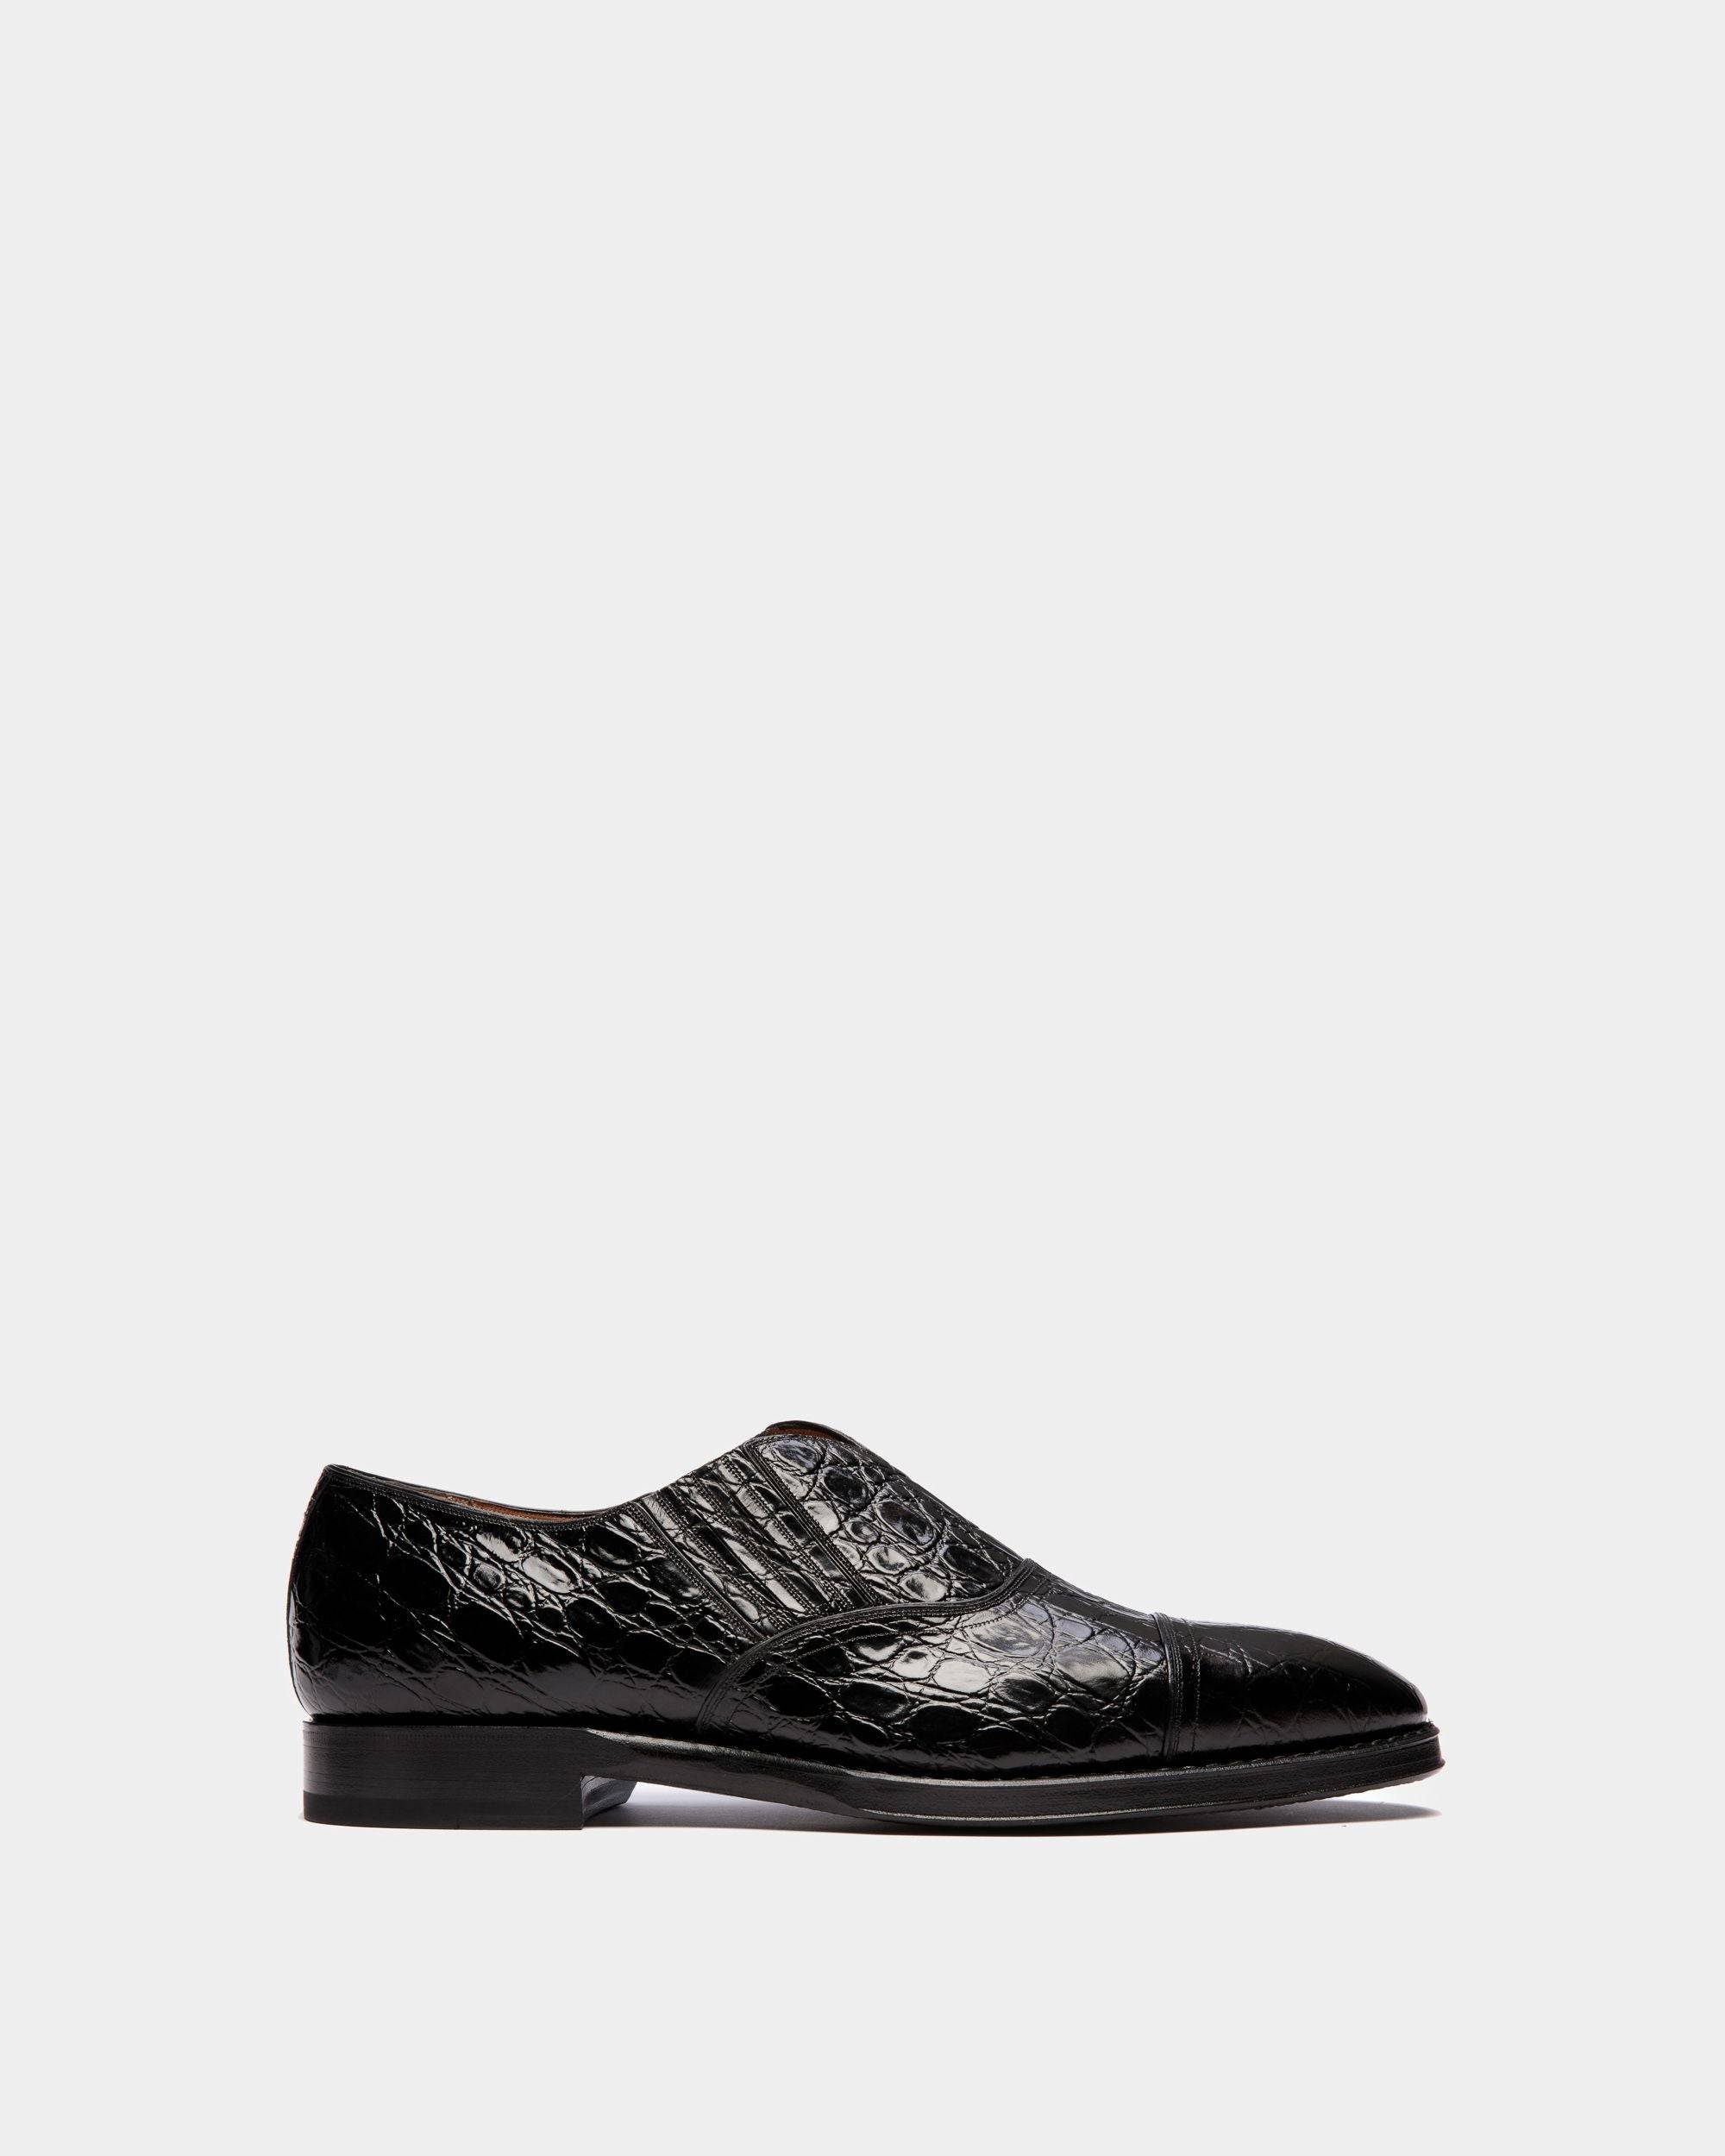 Scribe | Loafers für Herren aus bedrucktem Leder in Schwarz | Bally | Still Life Seite